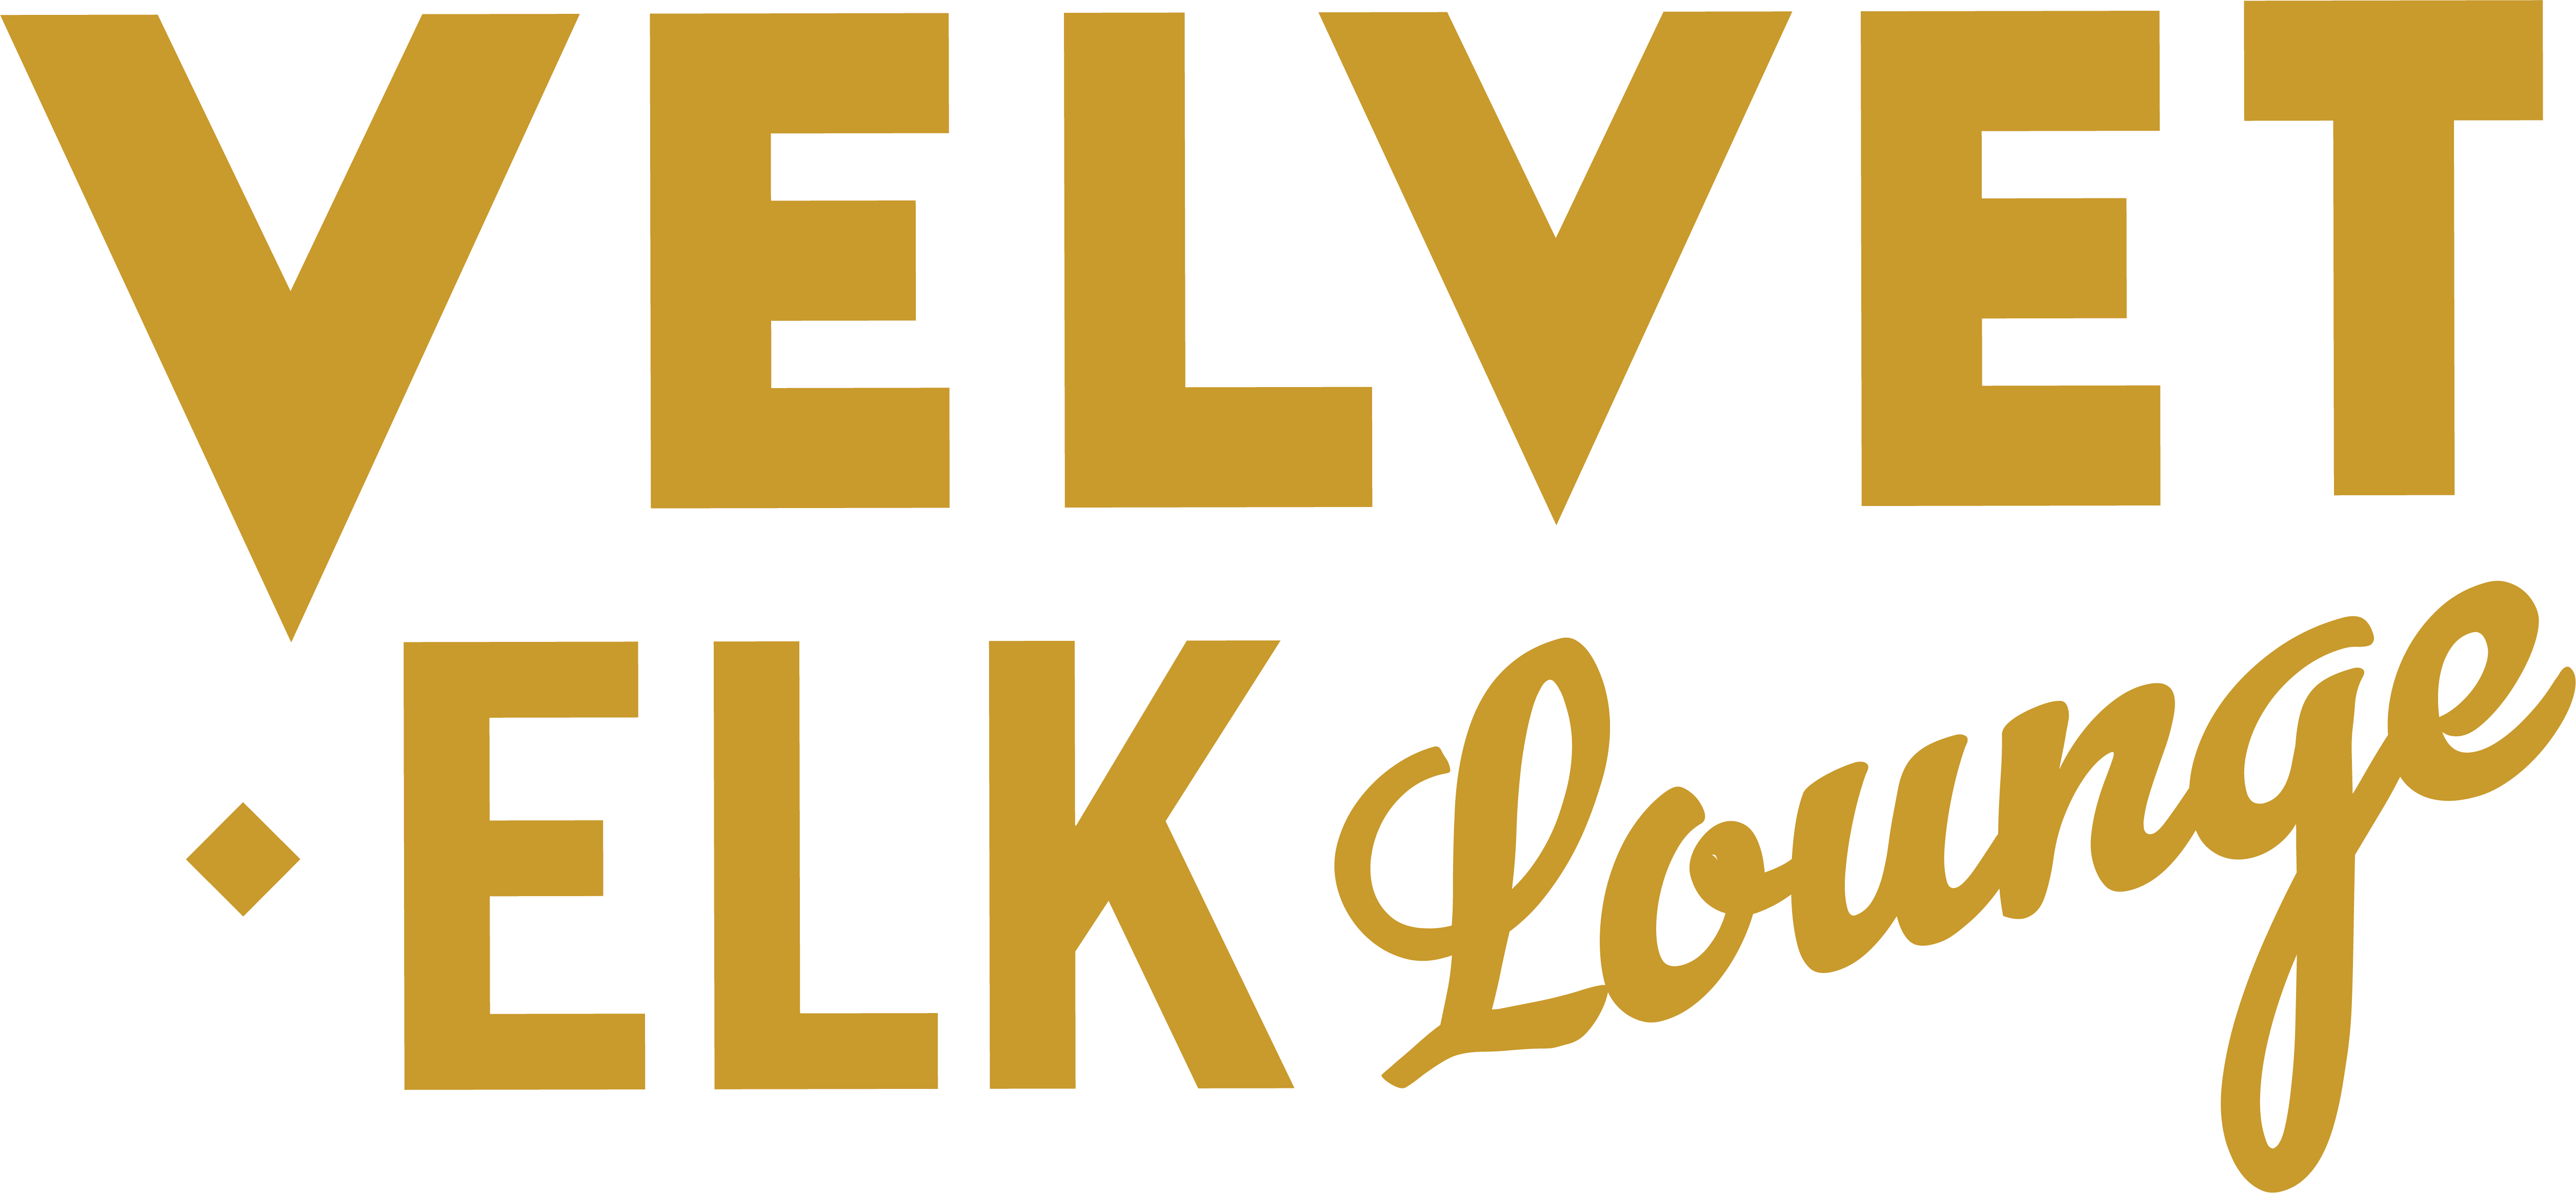 Velvet Elk Lounge Home